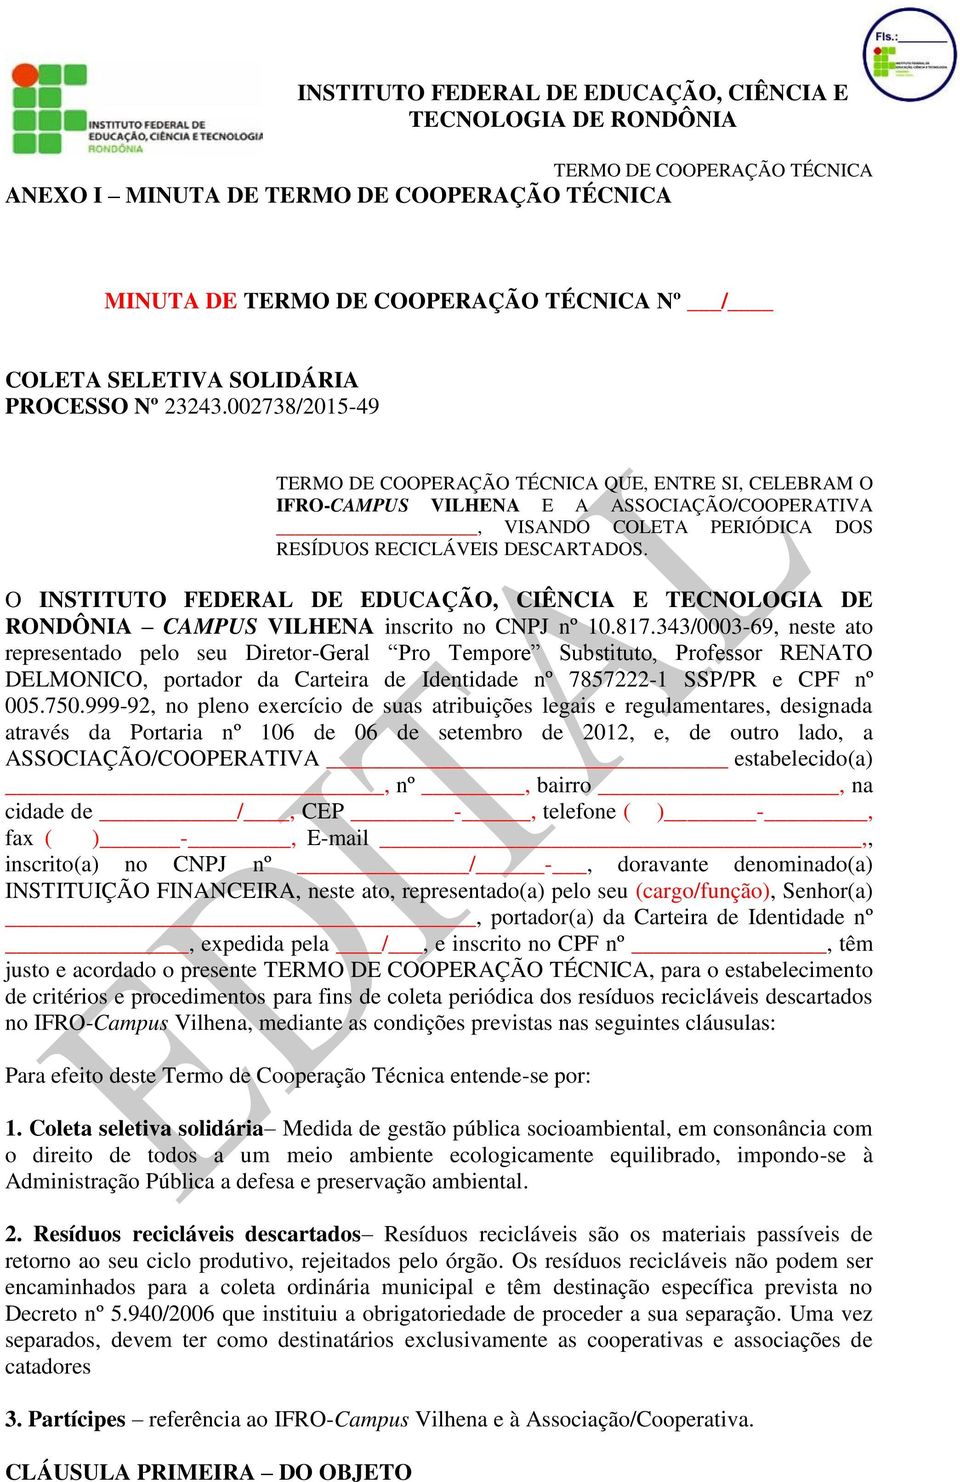 O INSTITUTO FEDERAL DE EDUCAÇÃO, CIÊNCIA E TECNOLOGIA DE RONDÔNIA CAMPUS VILHENA inscrito no CNPJ nº 10.817.